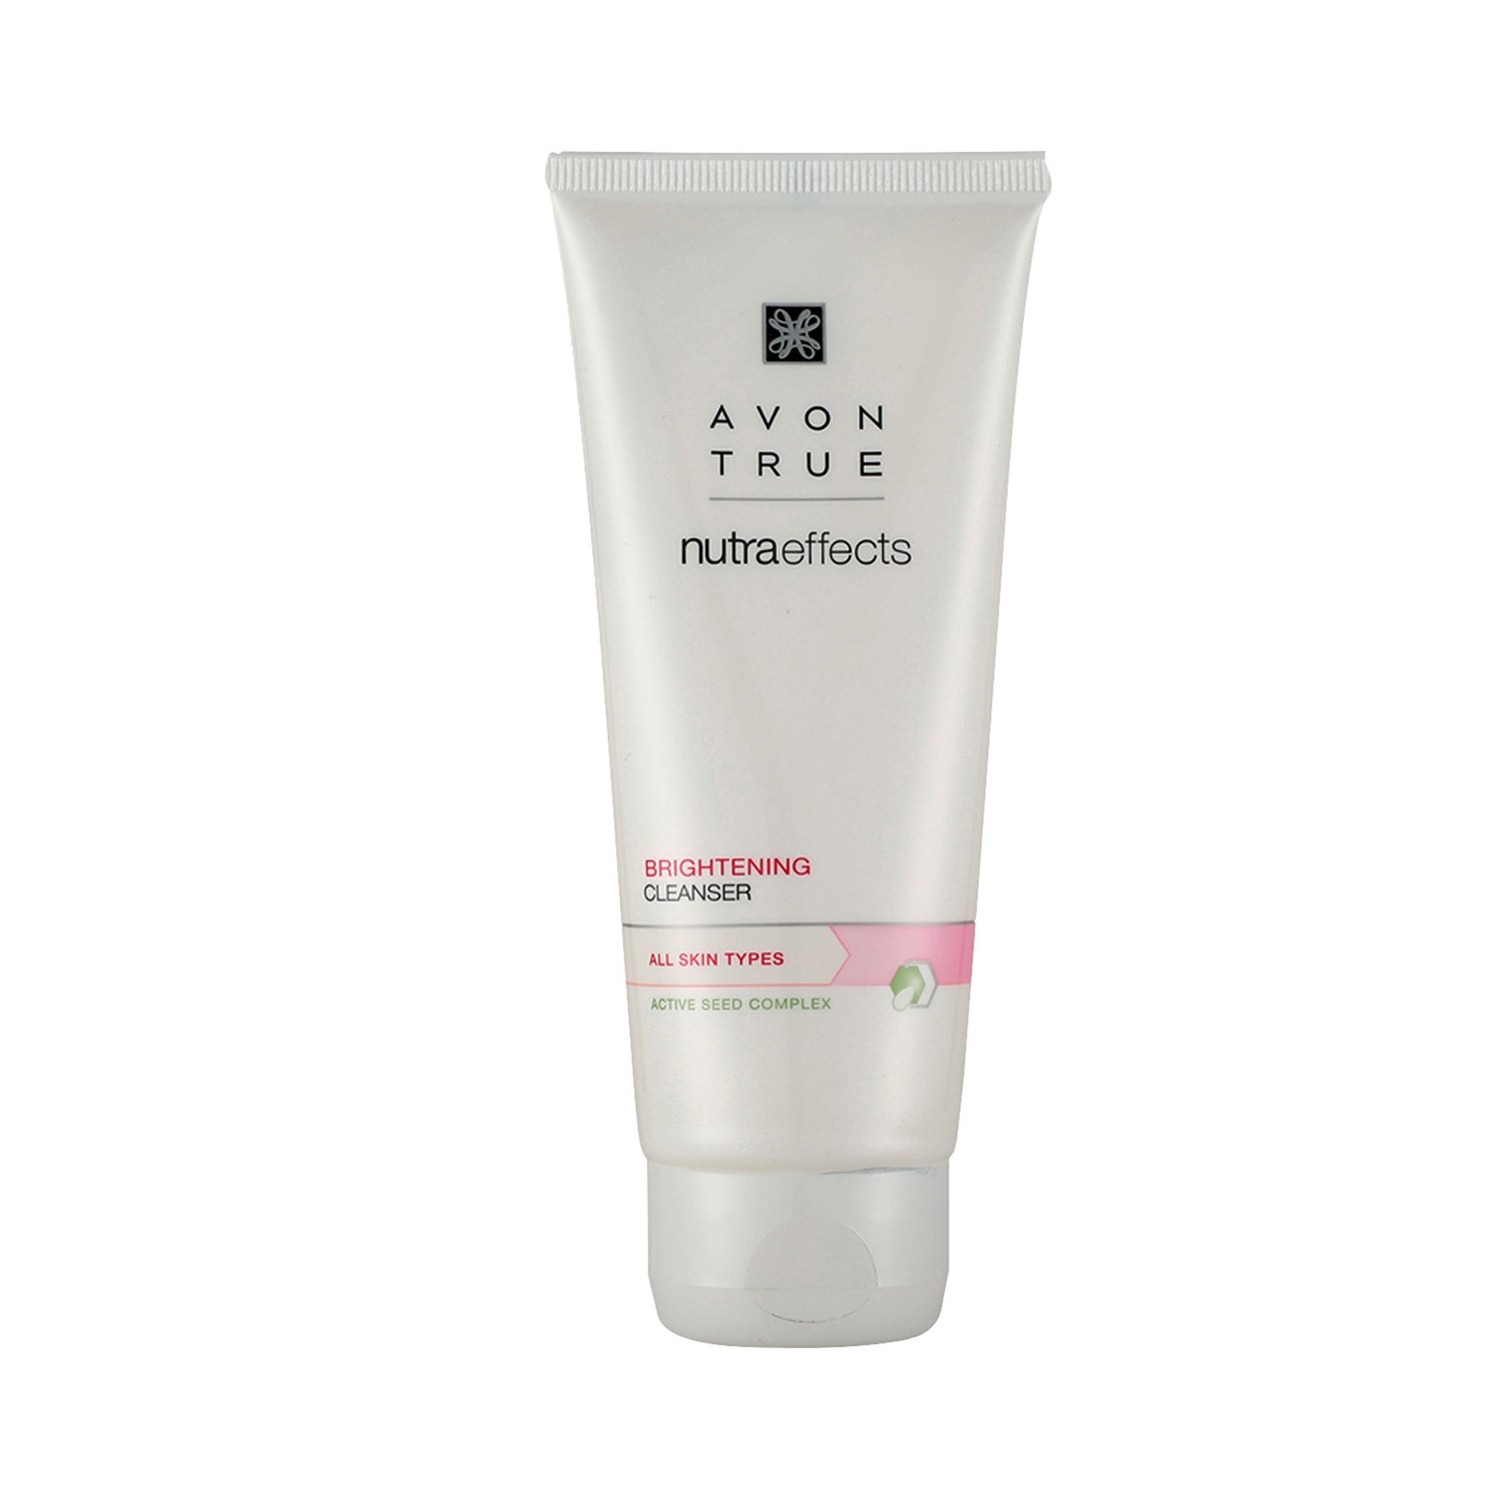 Avon | Avon True Nutraeffects Brightening Face Cleanser (100g)